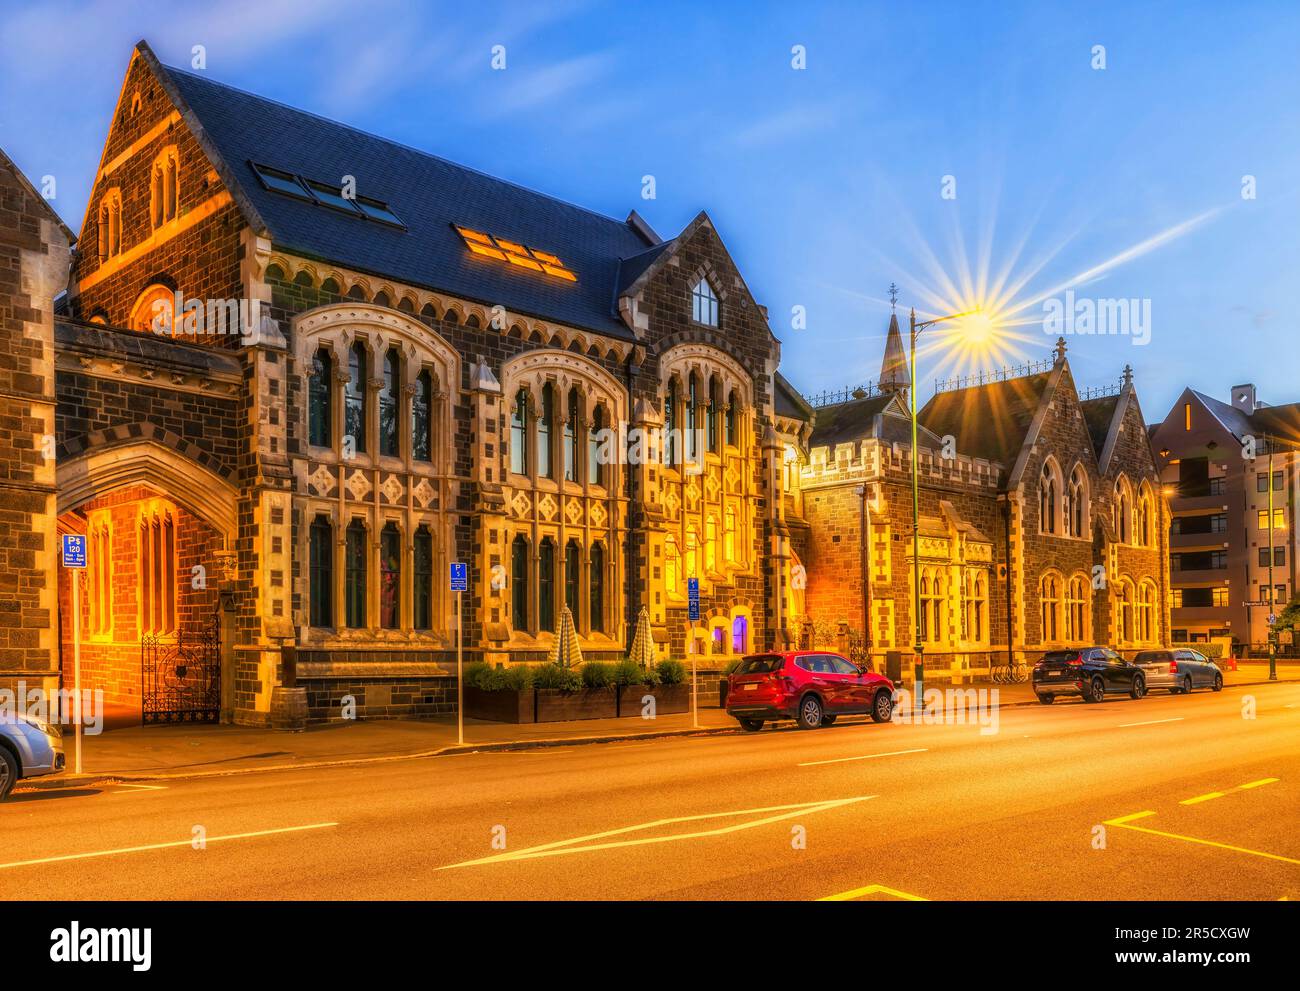 Classico stile architettonico gotico revical del quartiere storico dell'educazione nella città di Christchurch in Nuova Zelanda. Foto Stock